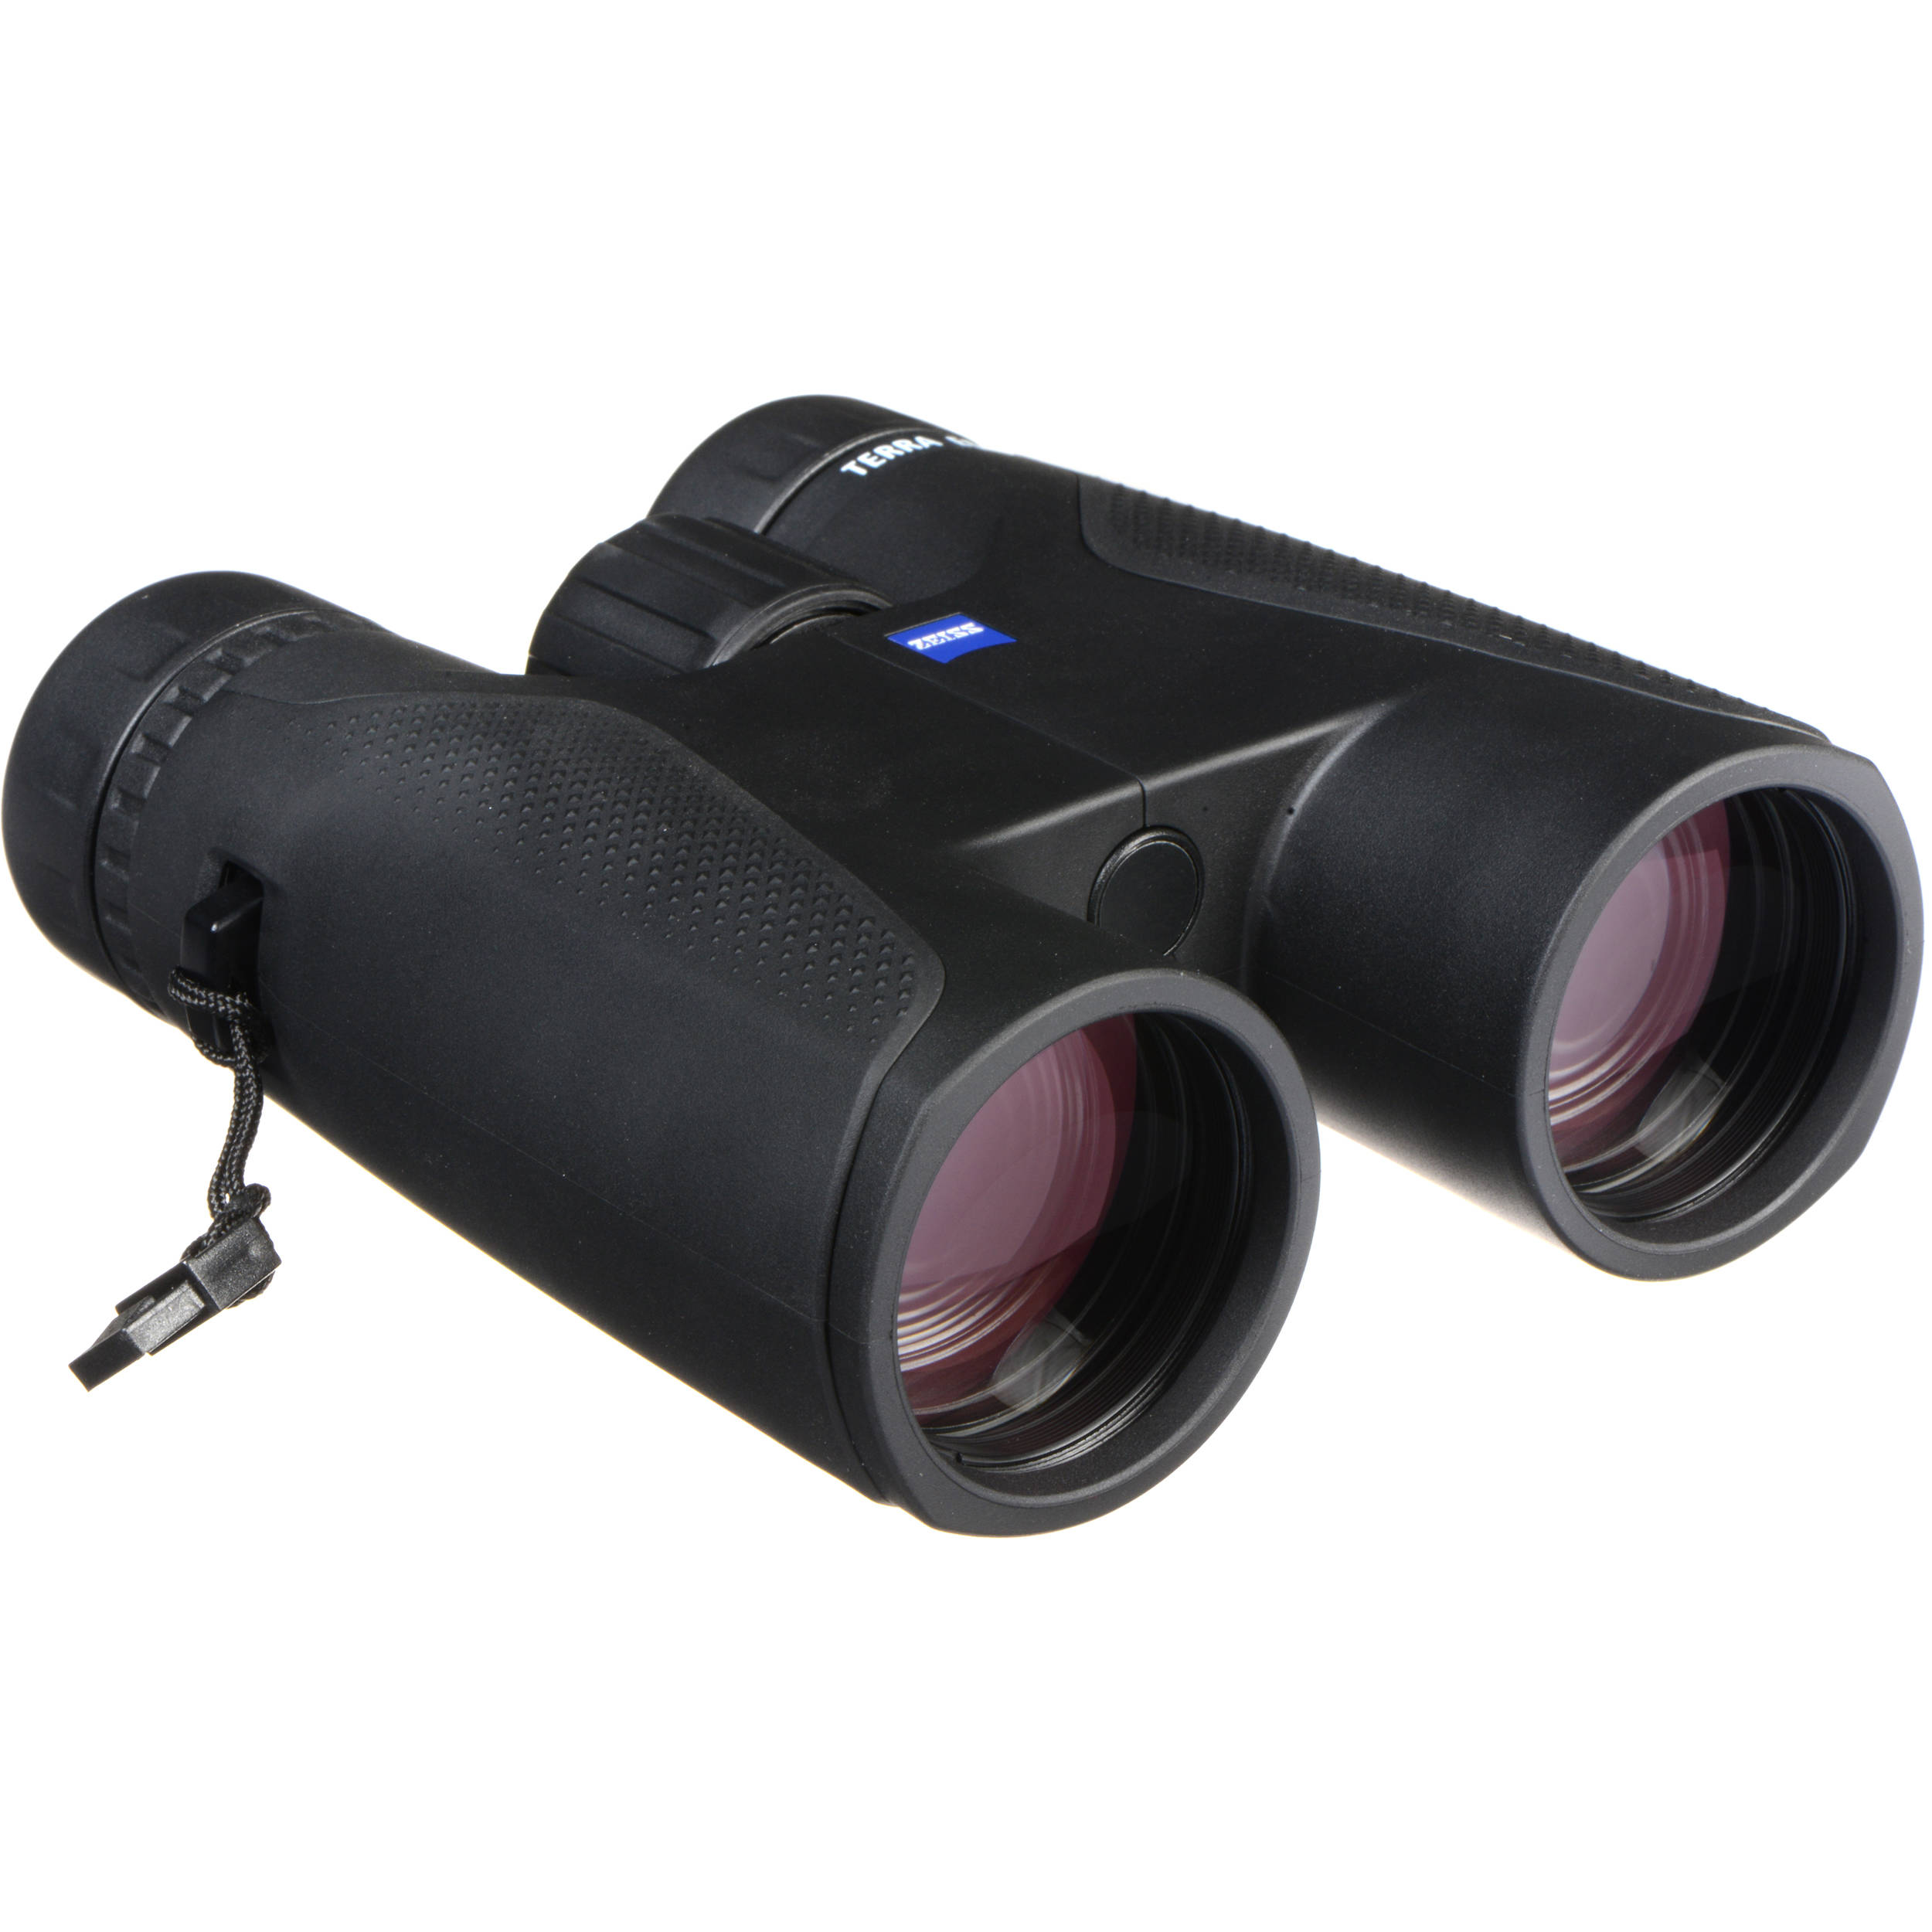 zeiss binoculars 10x42